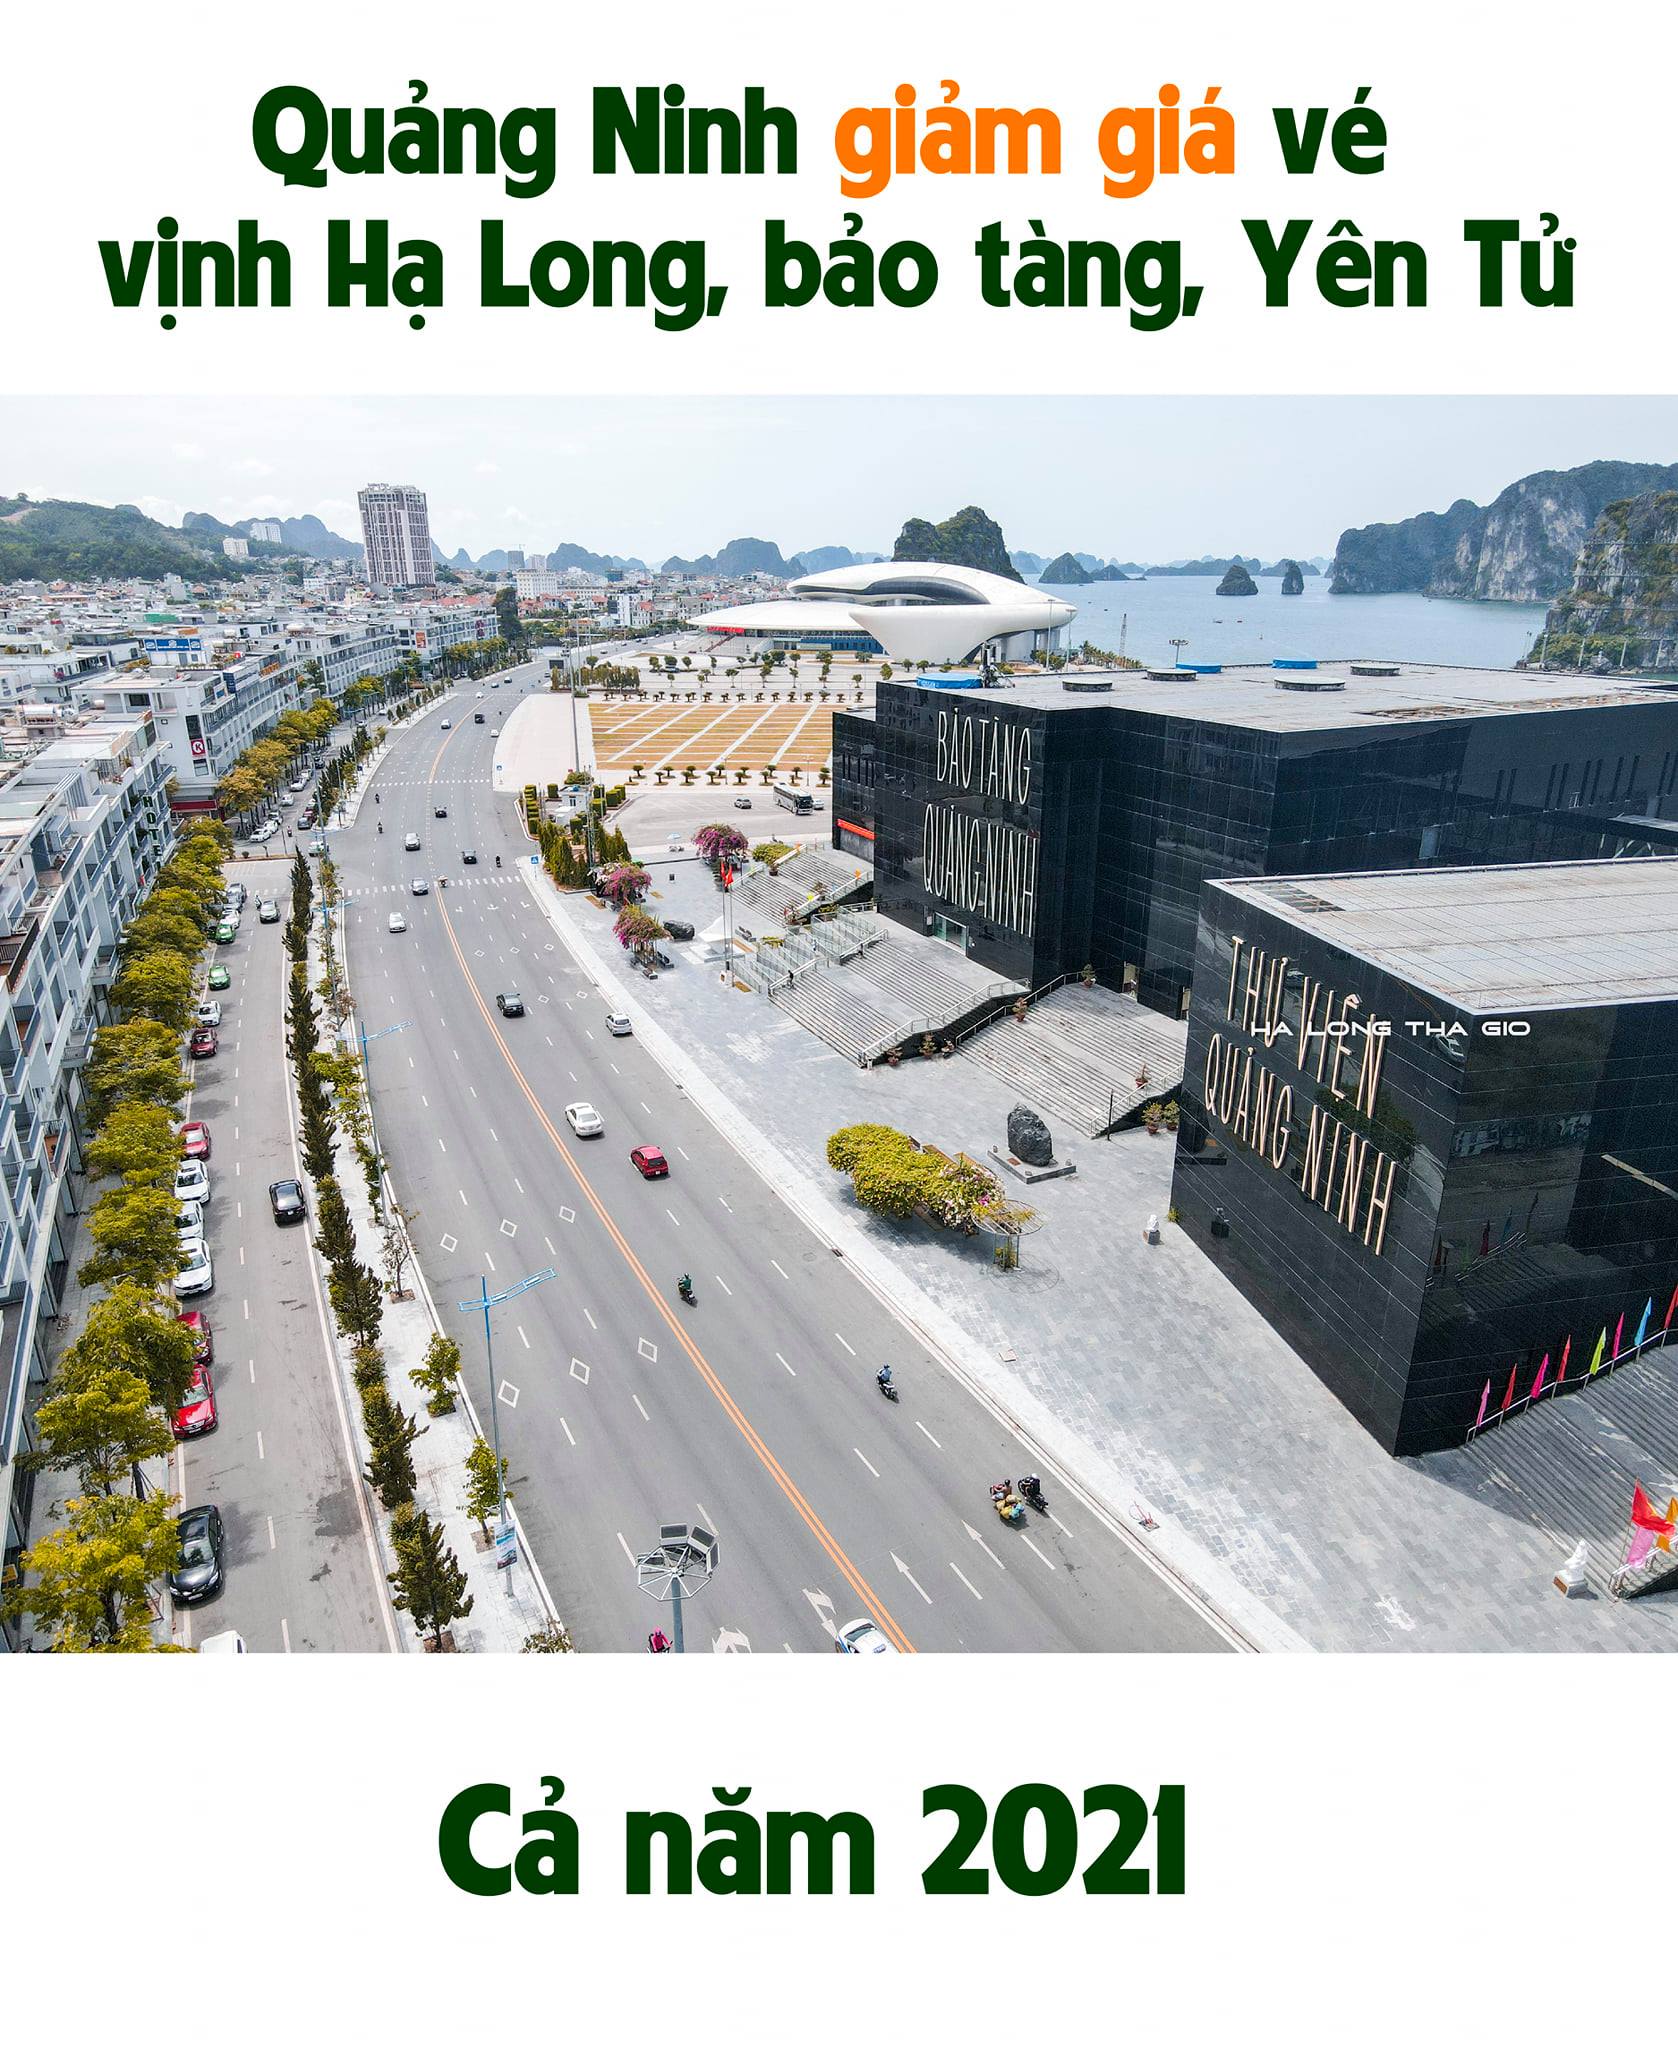 Giảm giá vé thăm Vịnh Hạ Long 2021